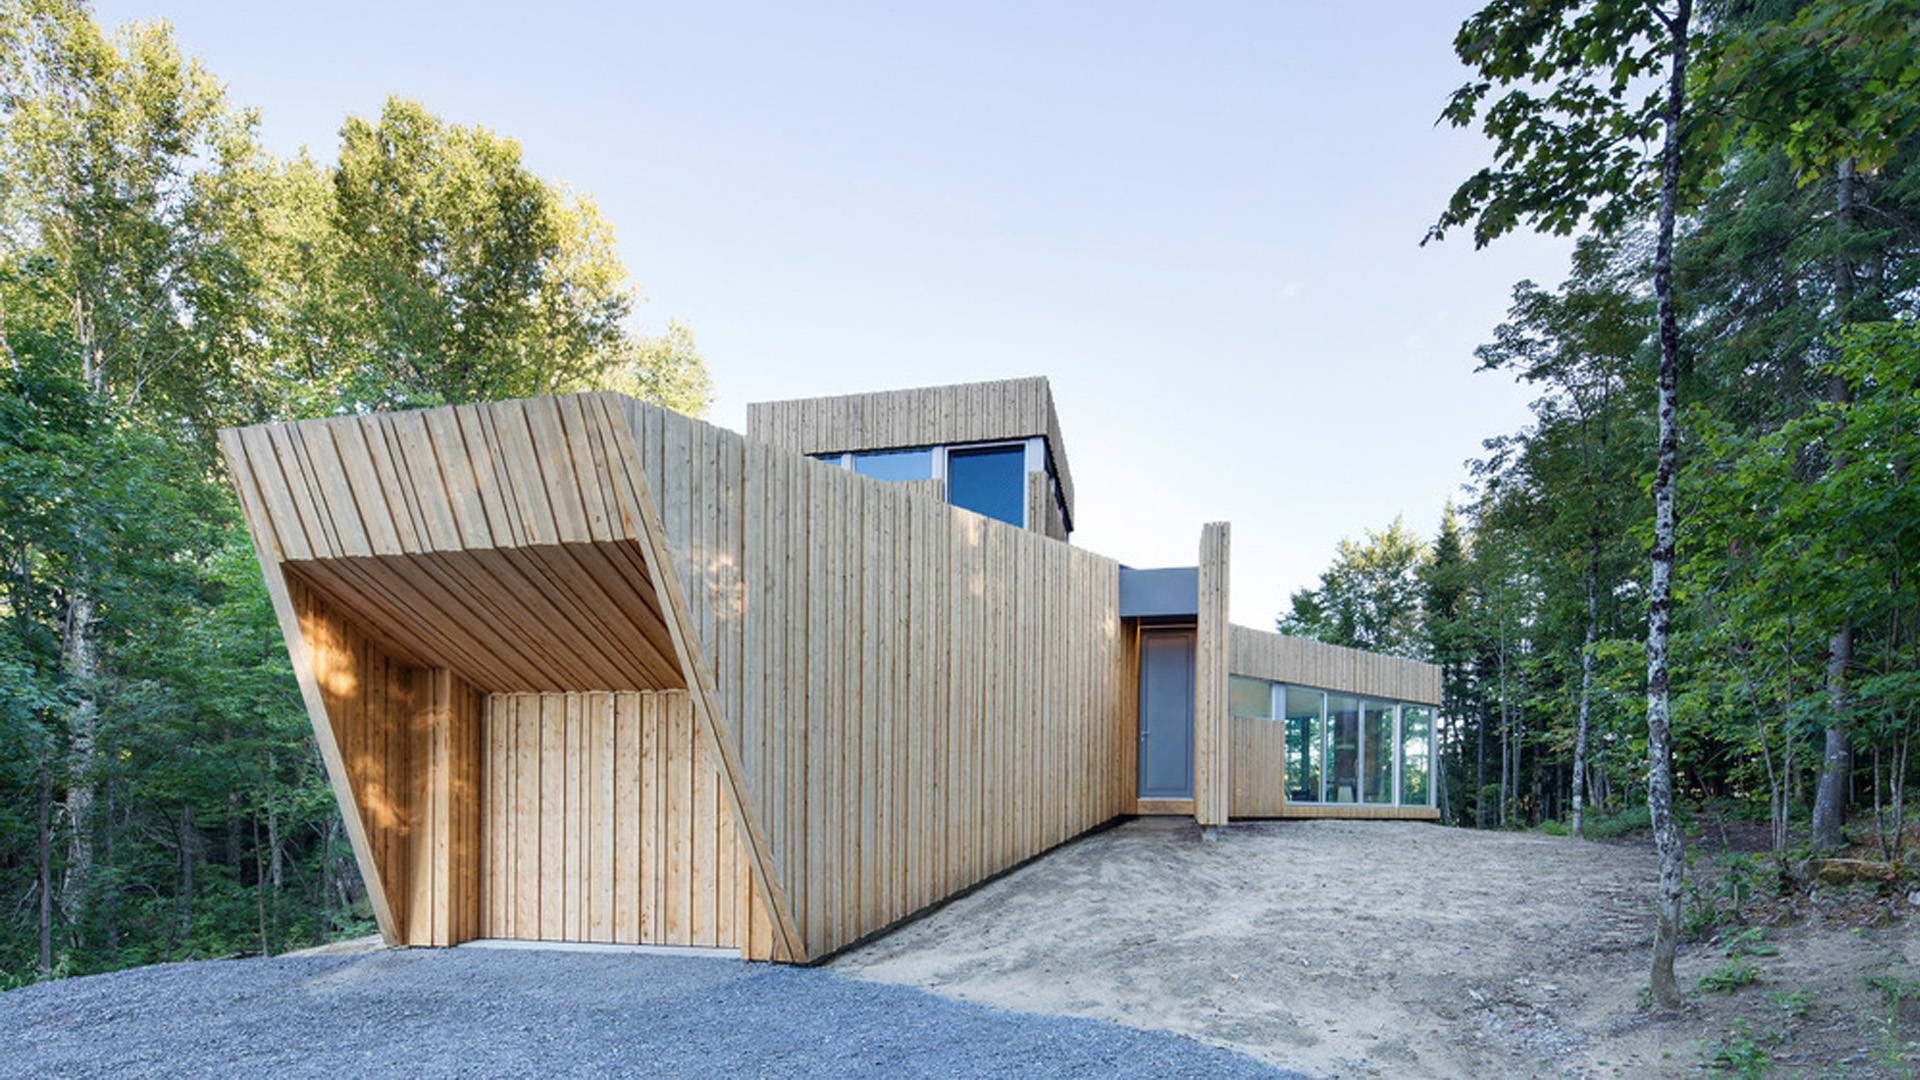 Abitazione in legno integrata con la natura